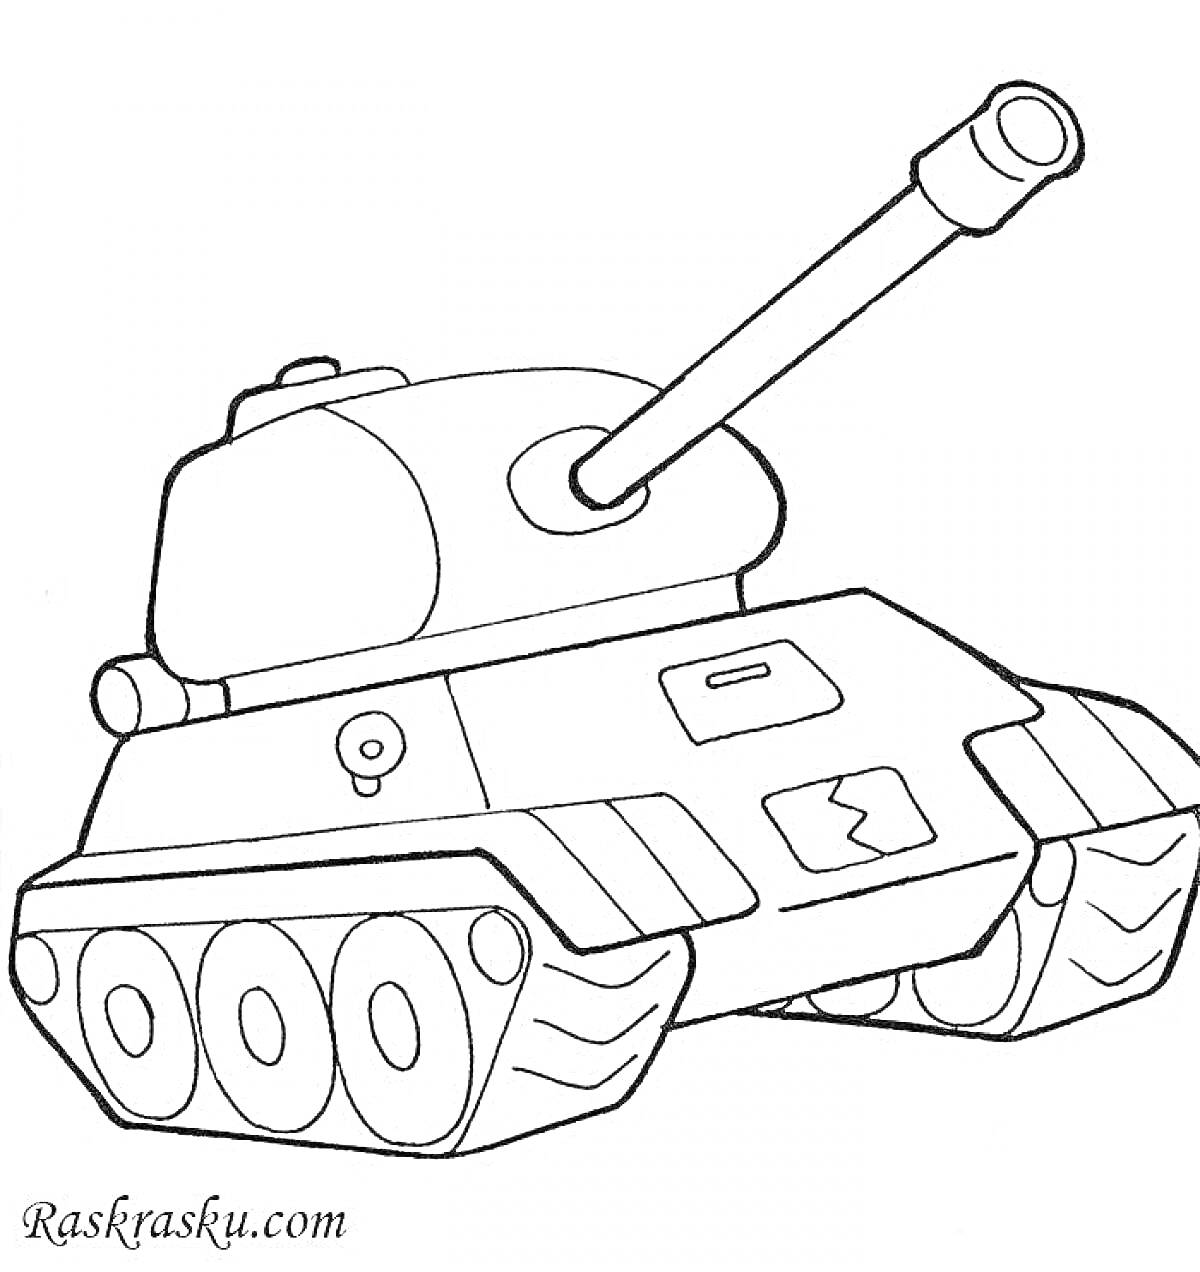 Раскраска Раскраска танк для малышей с гусеницами, пушкой и звёздочками